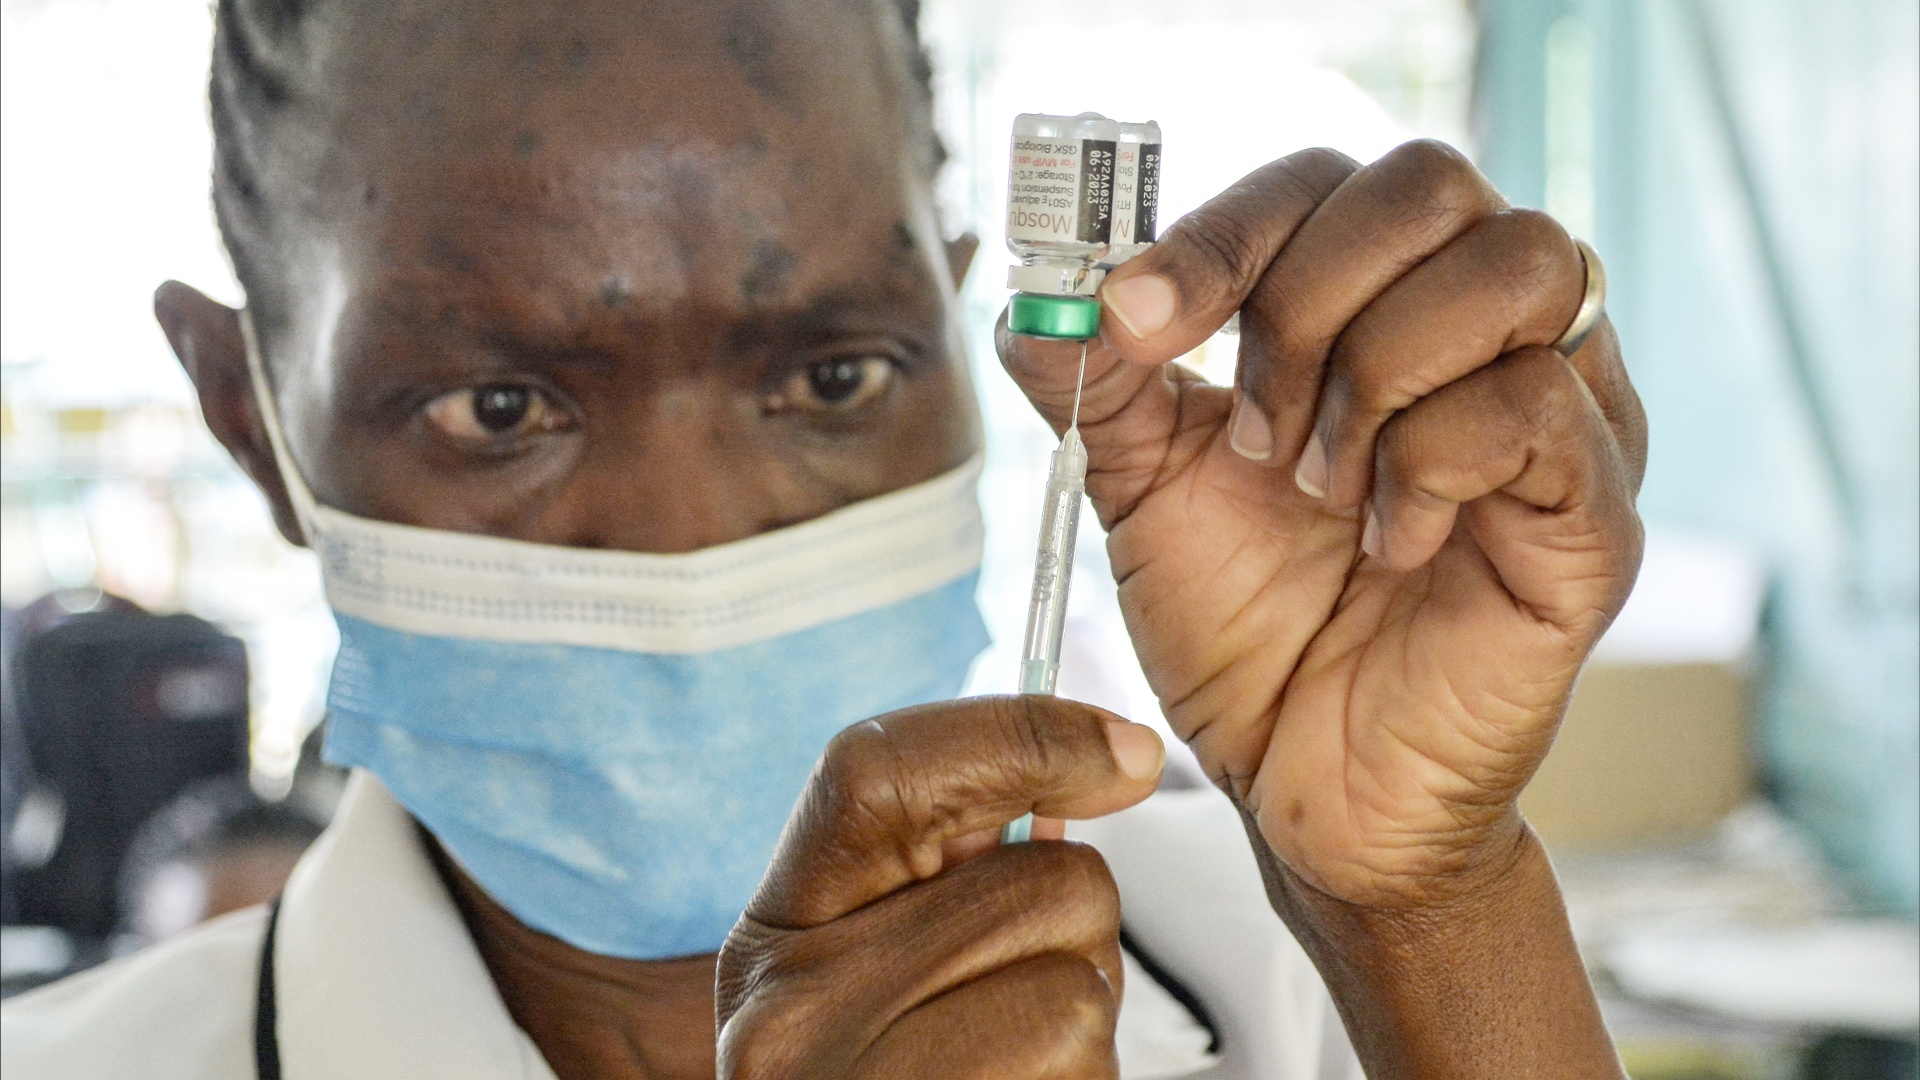 Первая вакцина от малярии даёт надежду африканским врачам